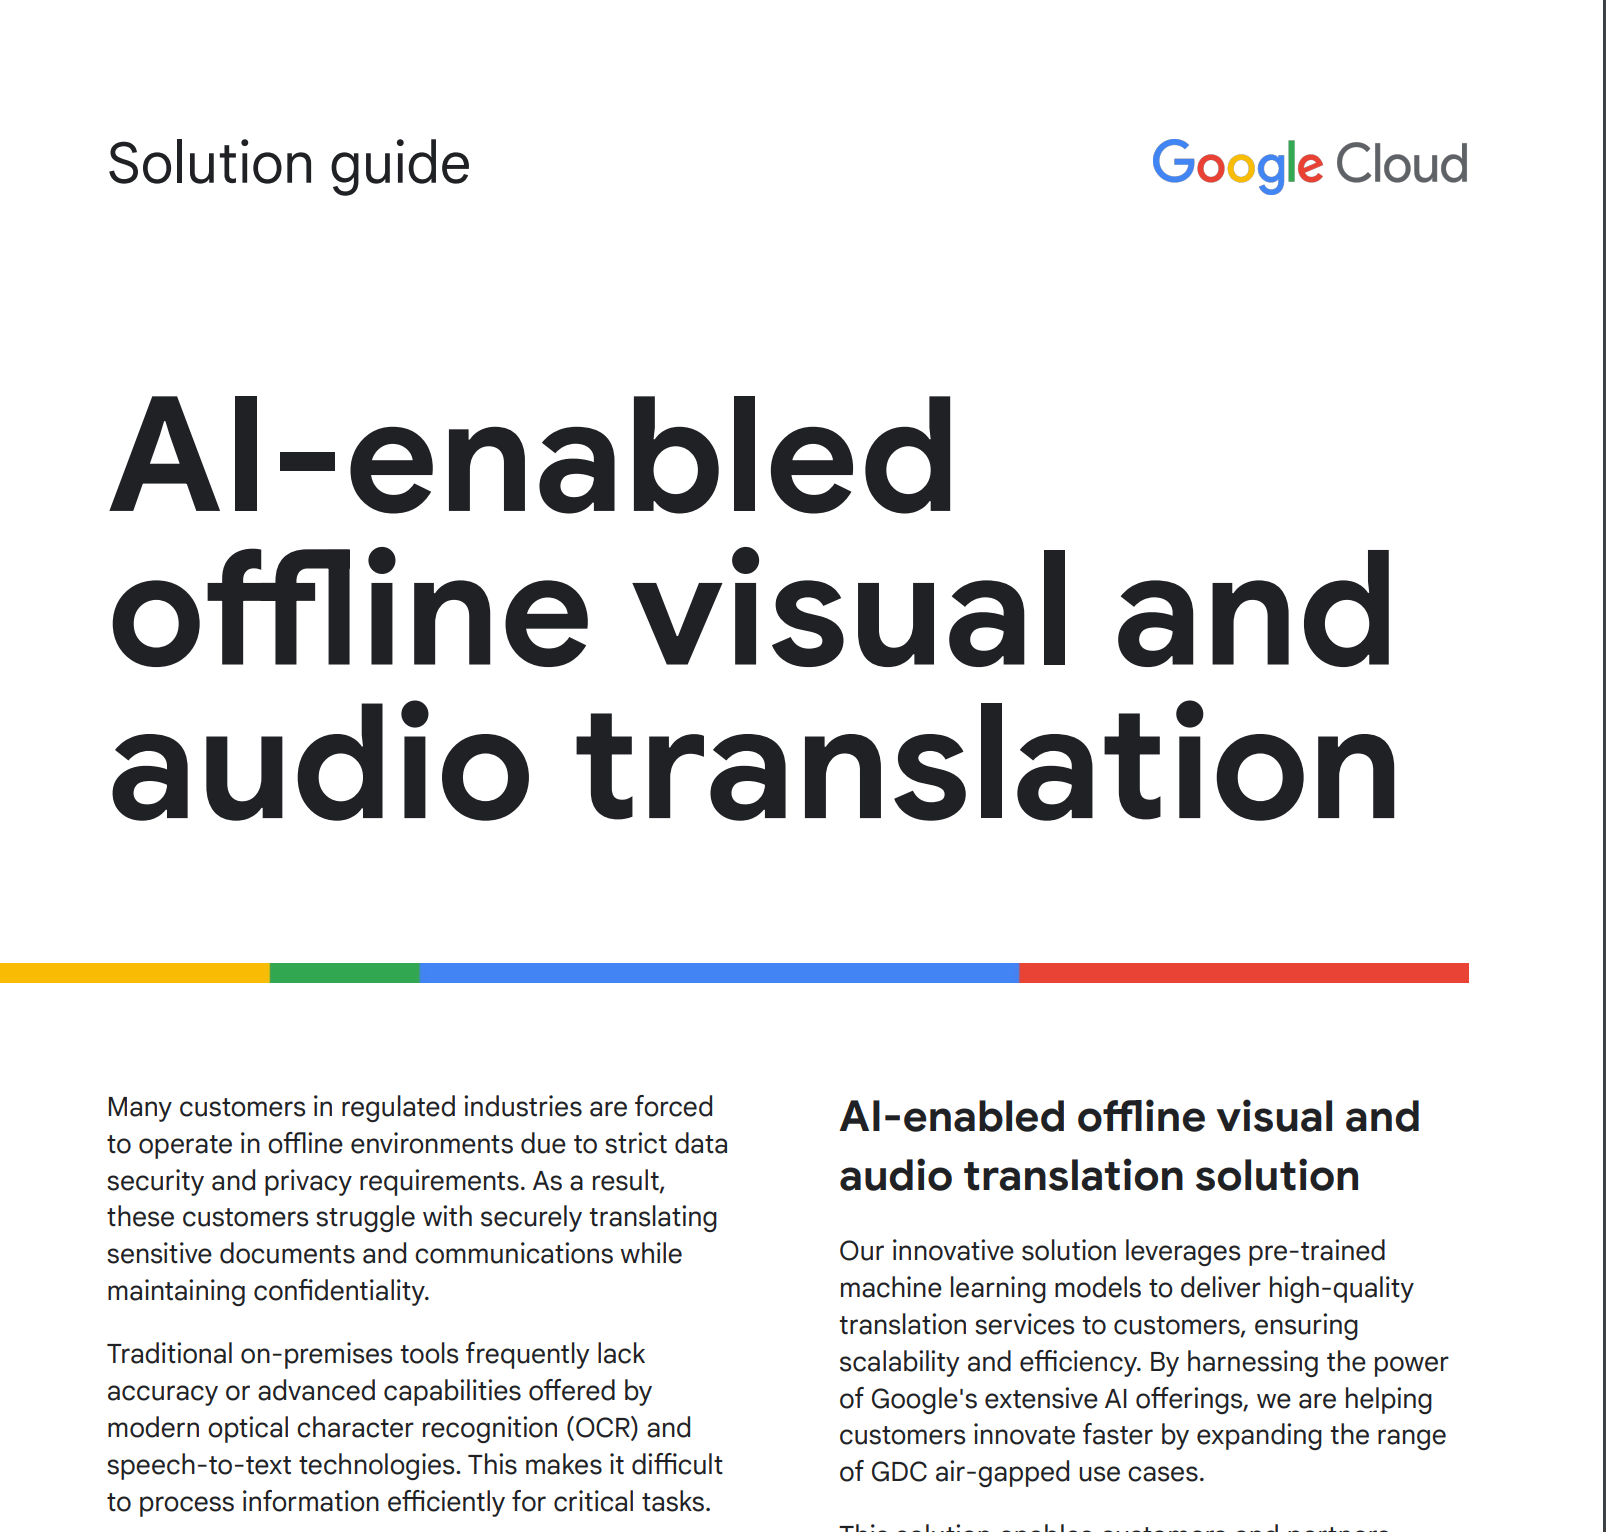 AI 지원 오프라인 시각 및 오디오 번역을 위한 솔루션 가이드